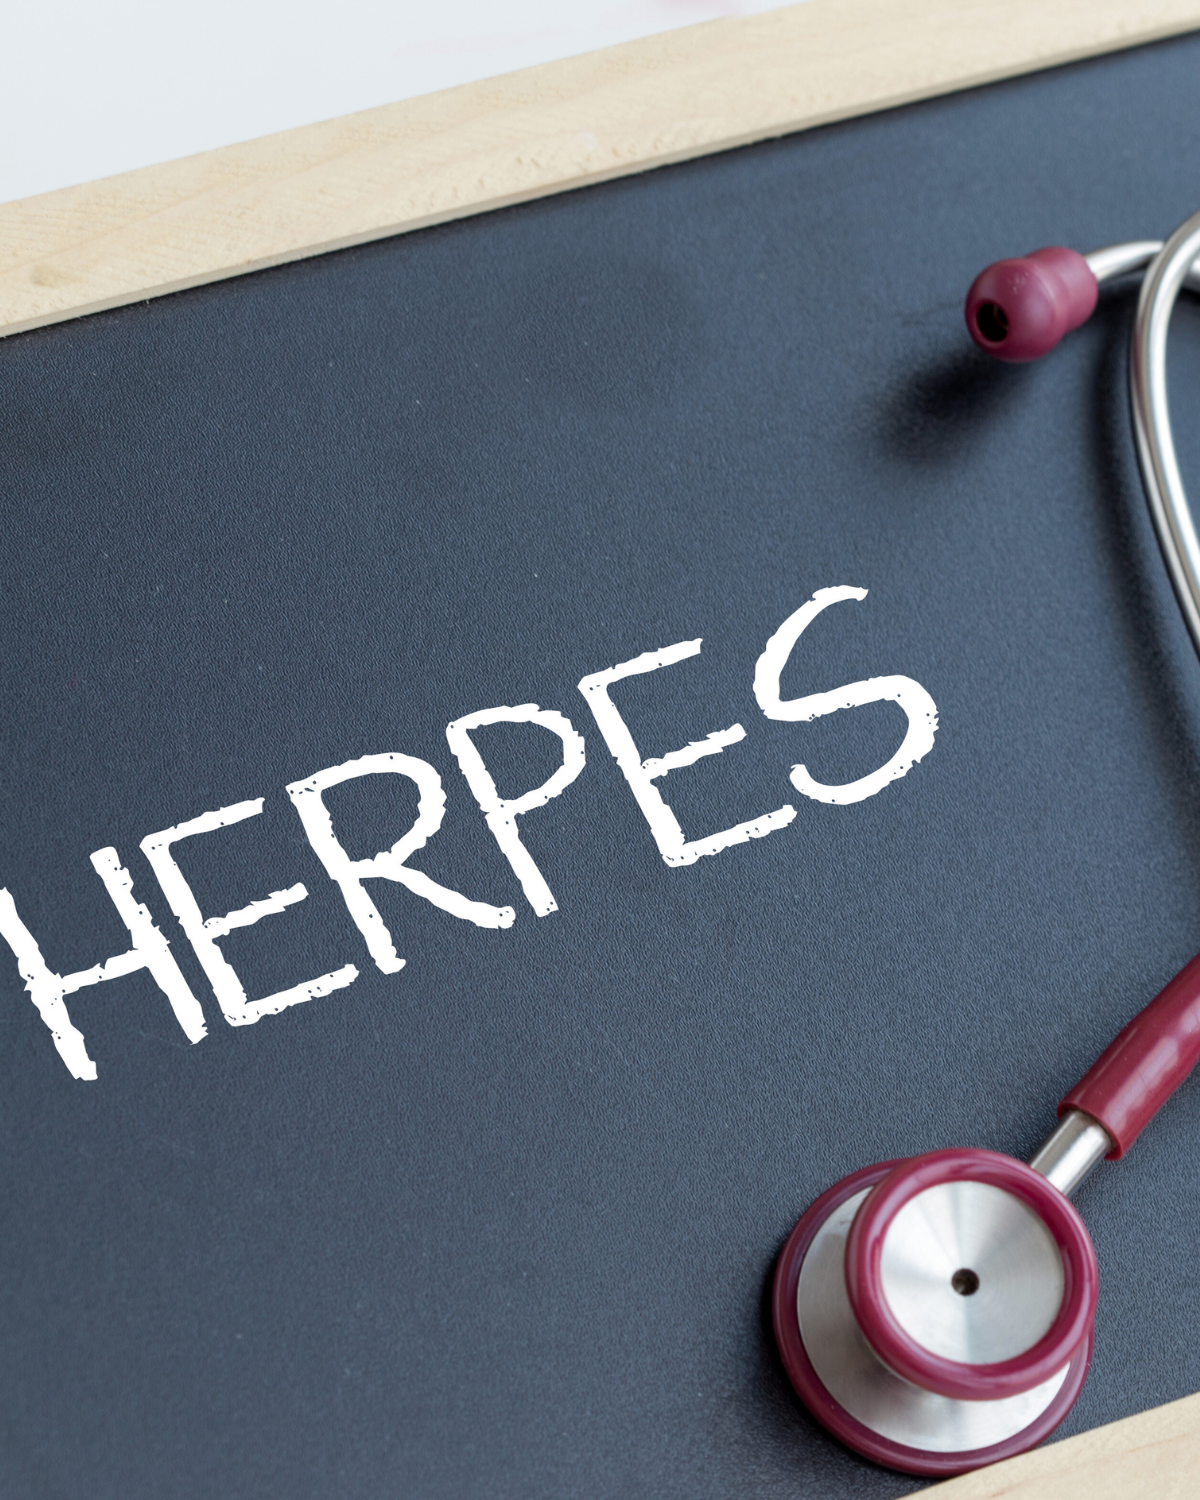 Herpes